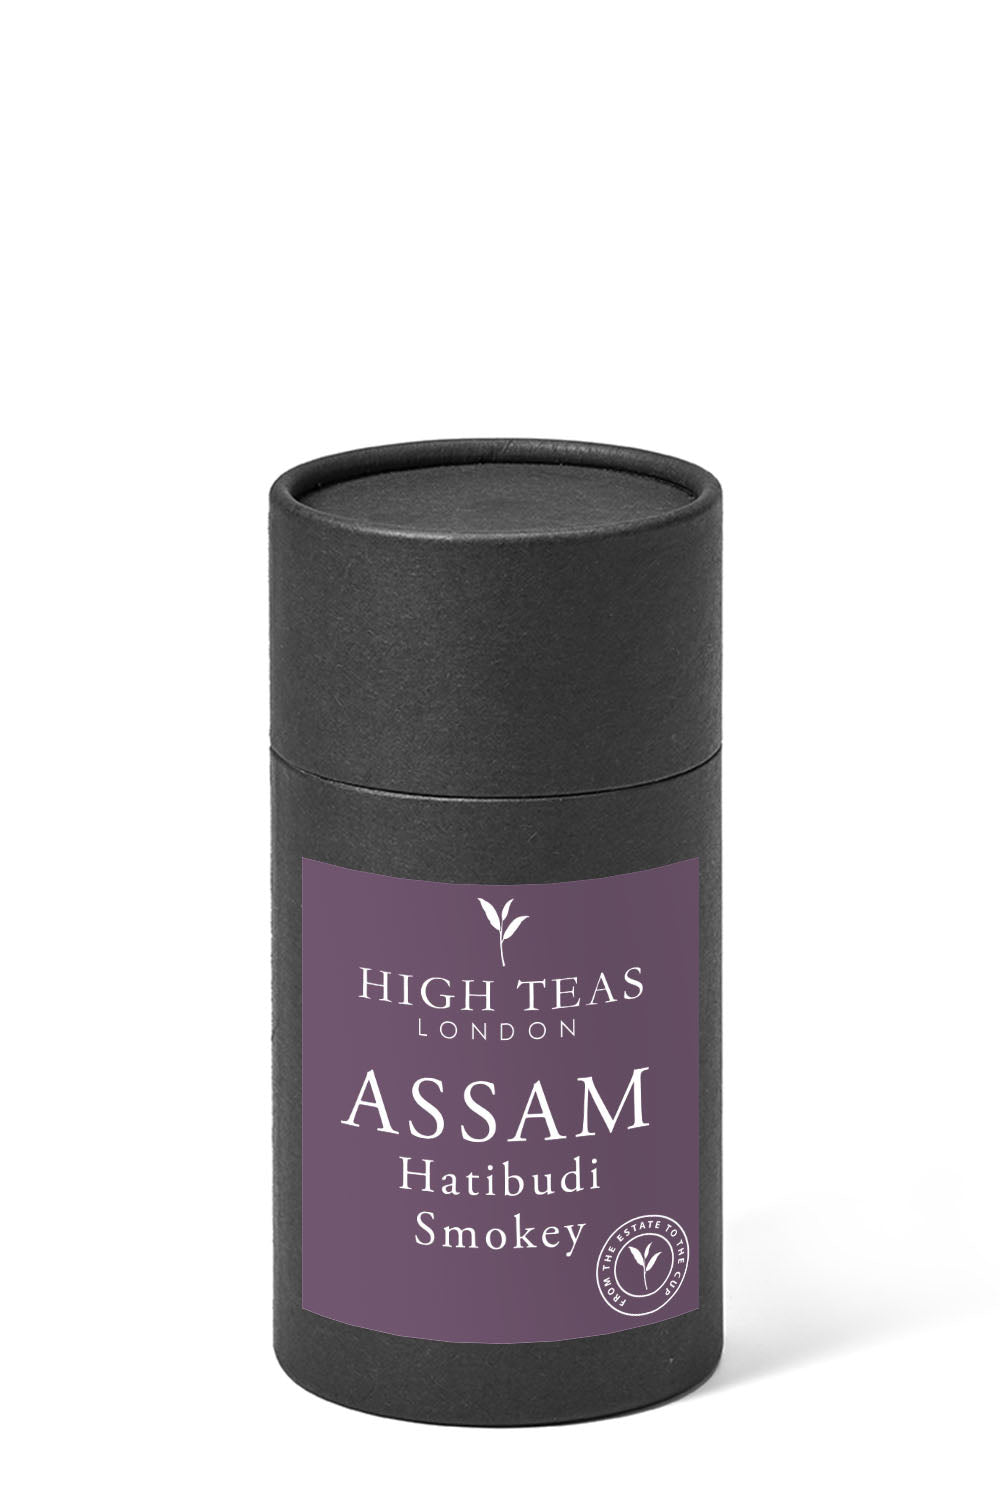 Assam Hatibudi Smoky-60g gift-Loose Leaf Tea-High Teas